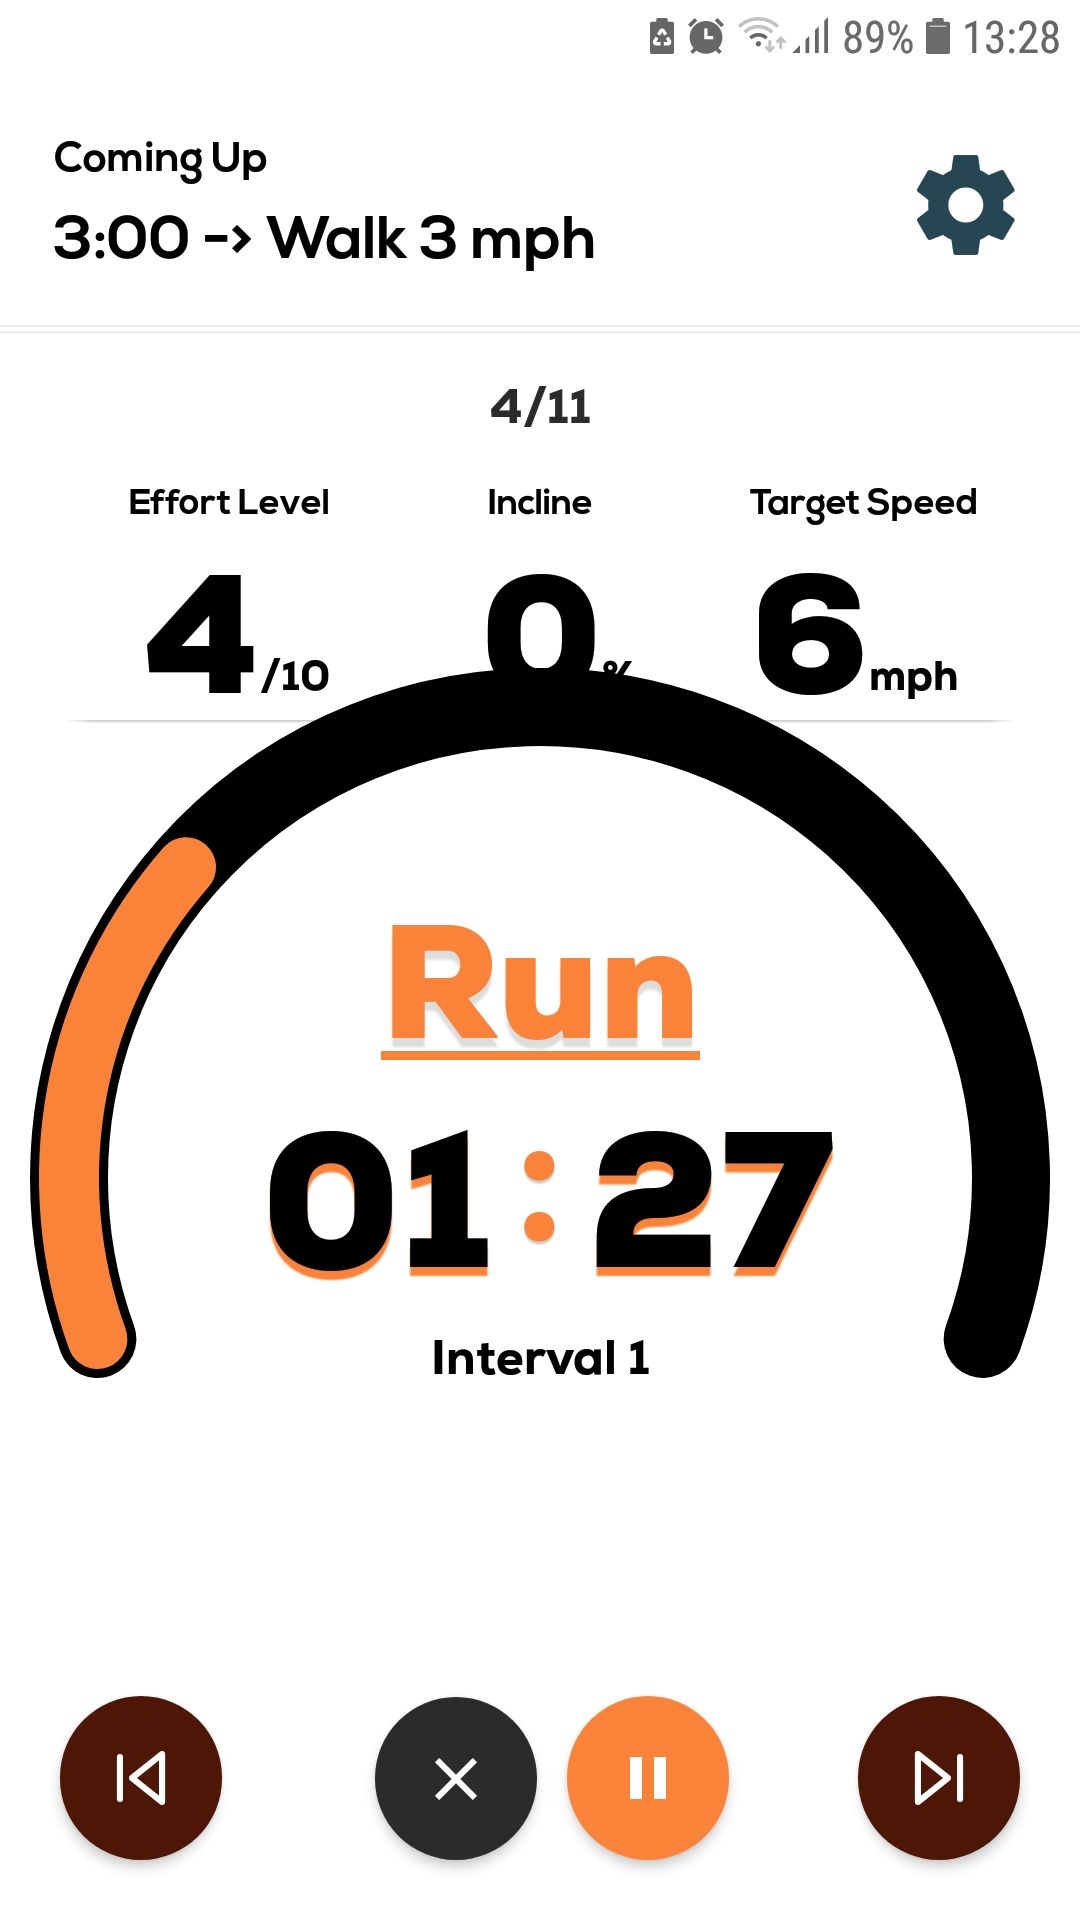 Treadmill mobile running walking workout app run timer